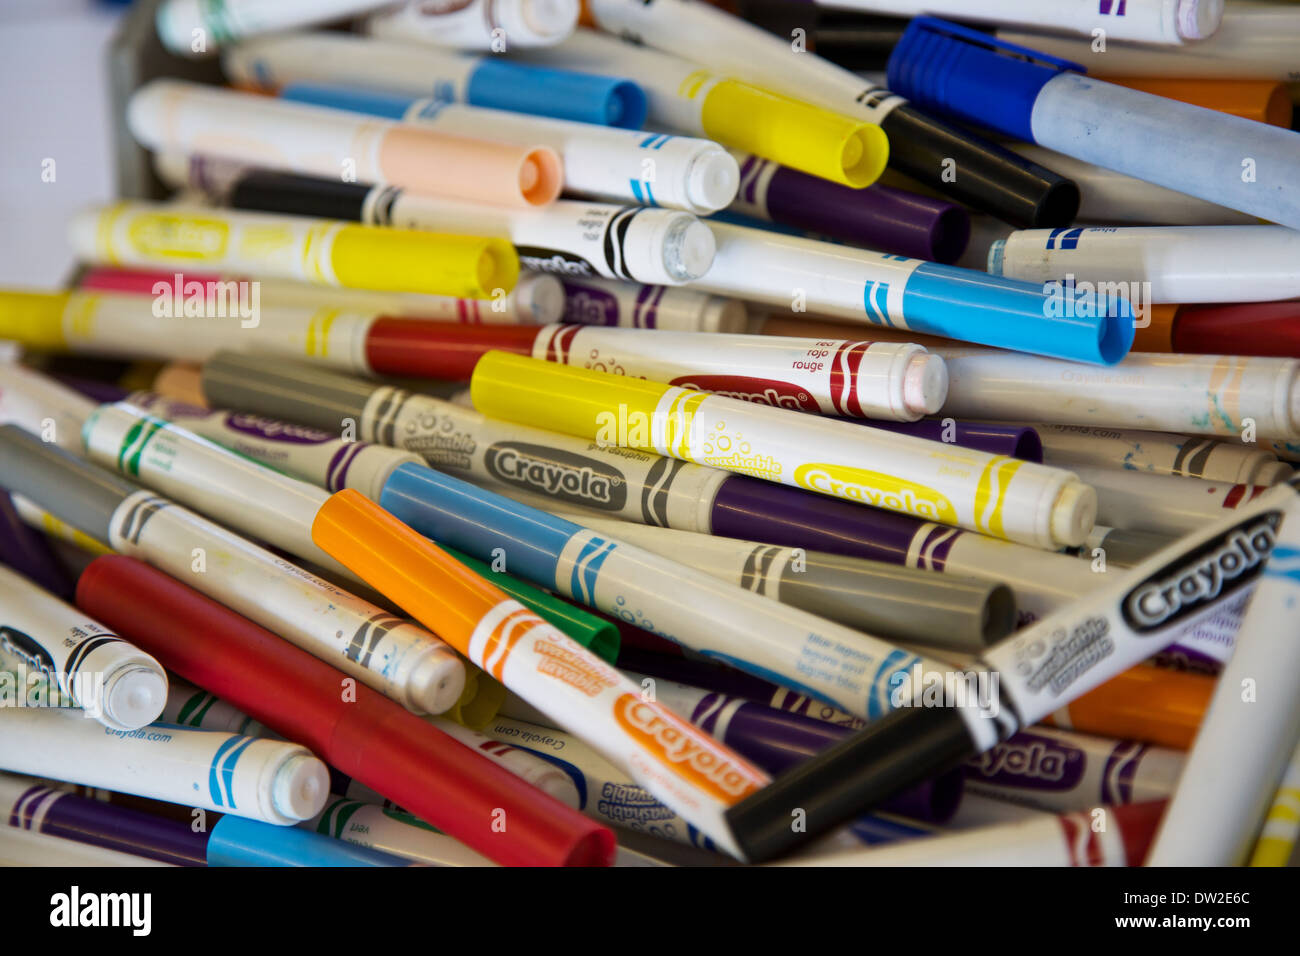 Ein Haufen von Filzstift Stifte Crayola Marke in verschiedenen Farben Farben Stockfoto